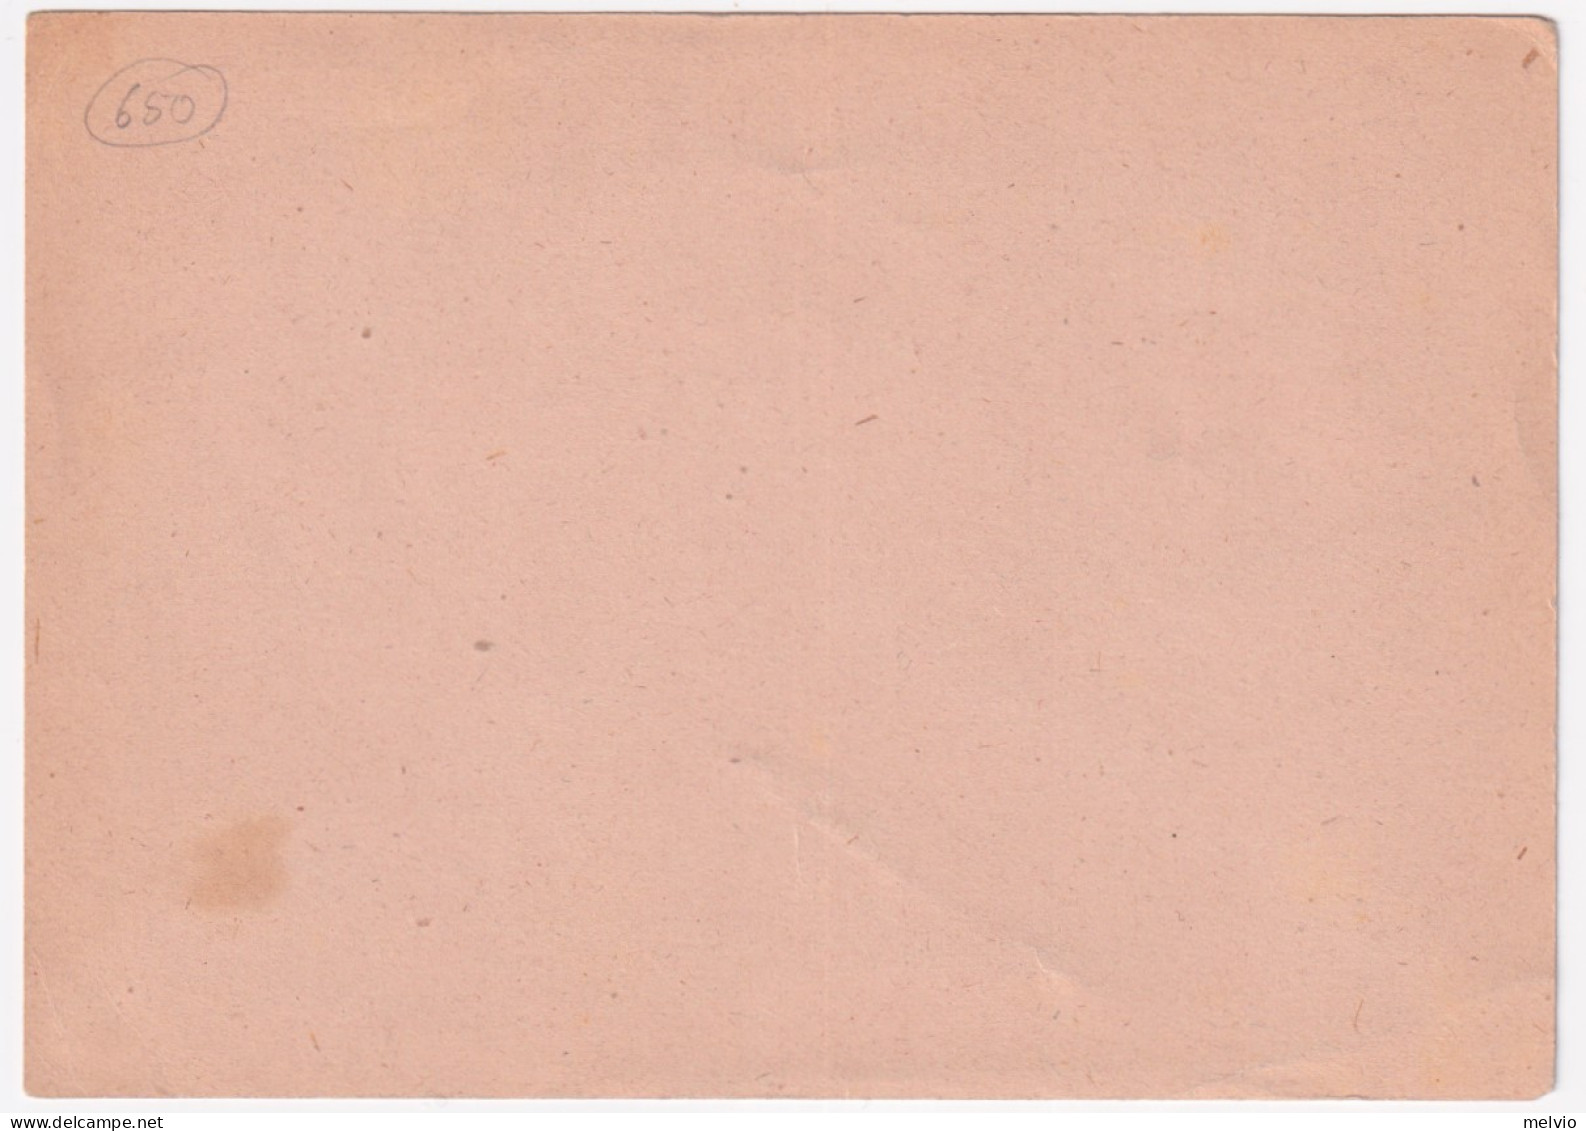 1946-Cartolina Postale Lire 3 Fiaccola (C131) Nuova - Interi Postali